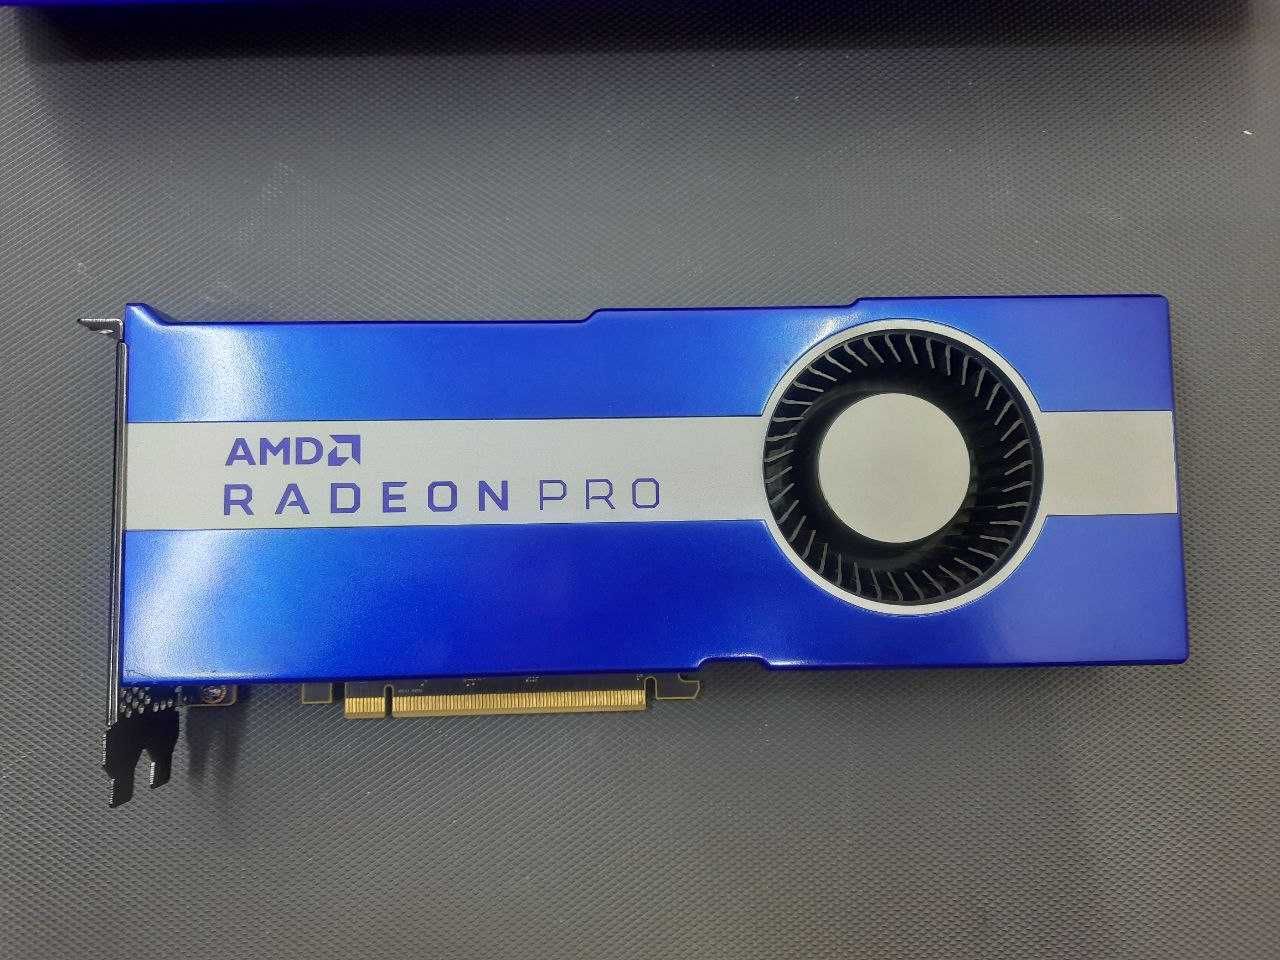 Відеокарта AMD Radeon Pro VII 16Gb. Супер стан!! Гарантія!